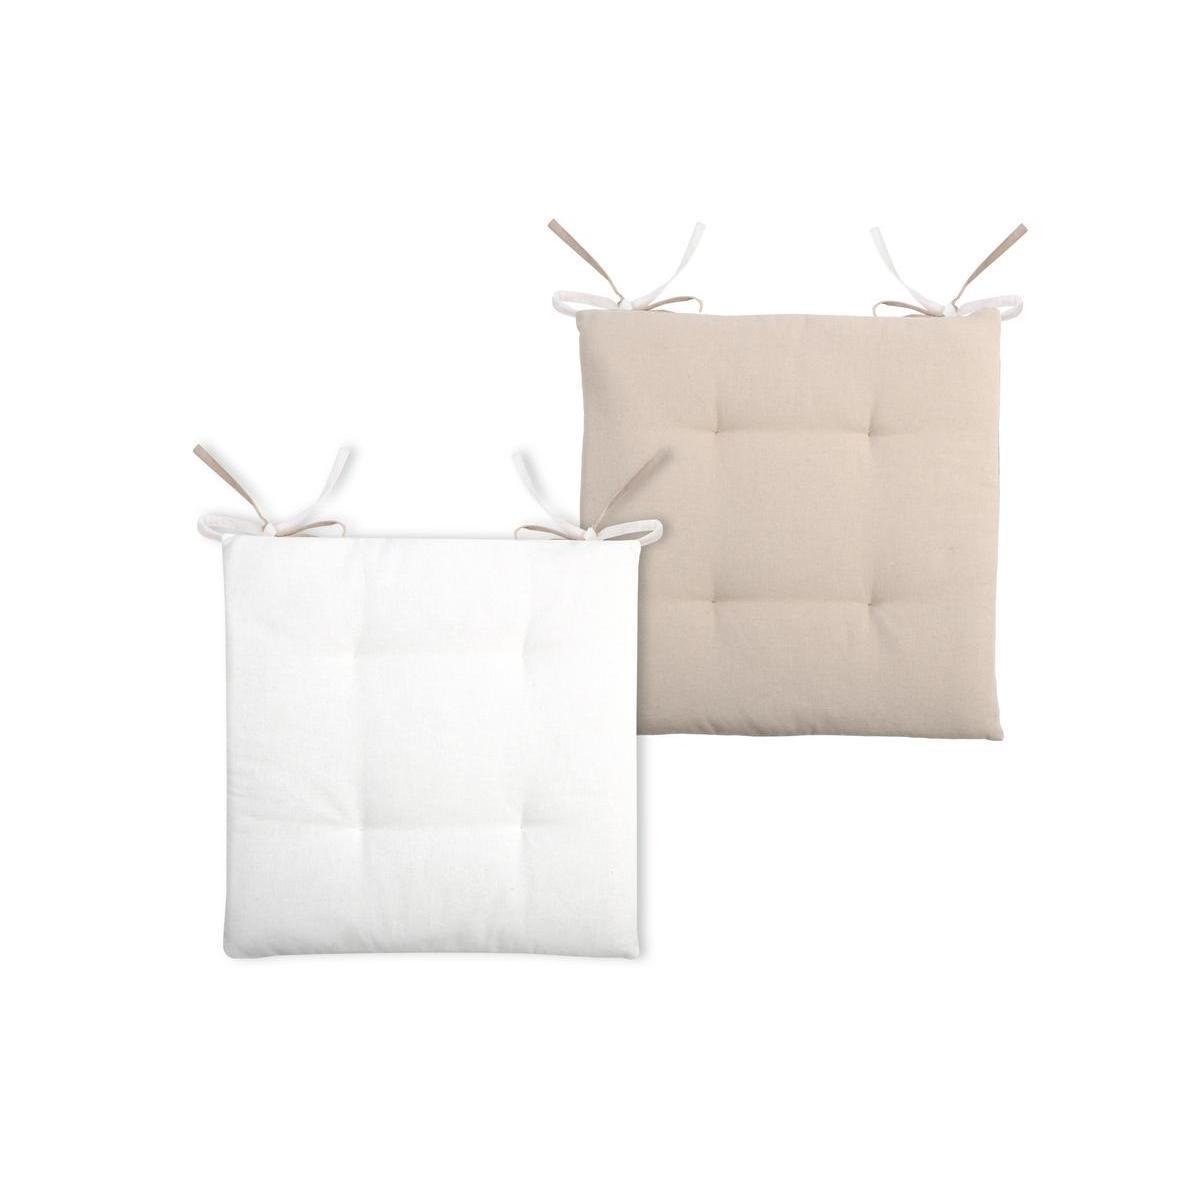 2 galettes de chaises 4 points - 100 % coton - 38 x 38 x 3,5 cm - Écru et blanc